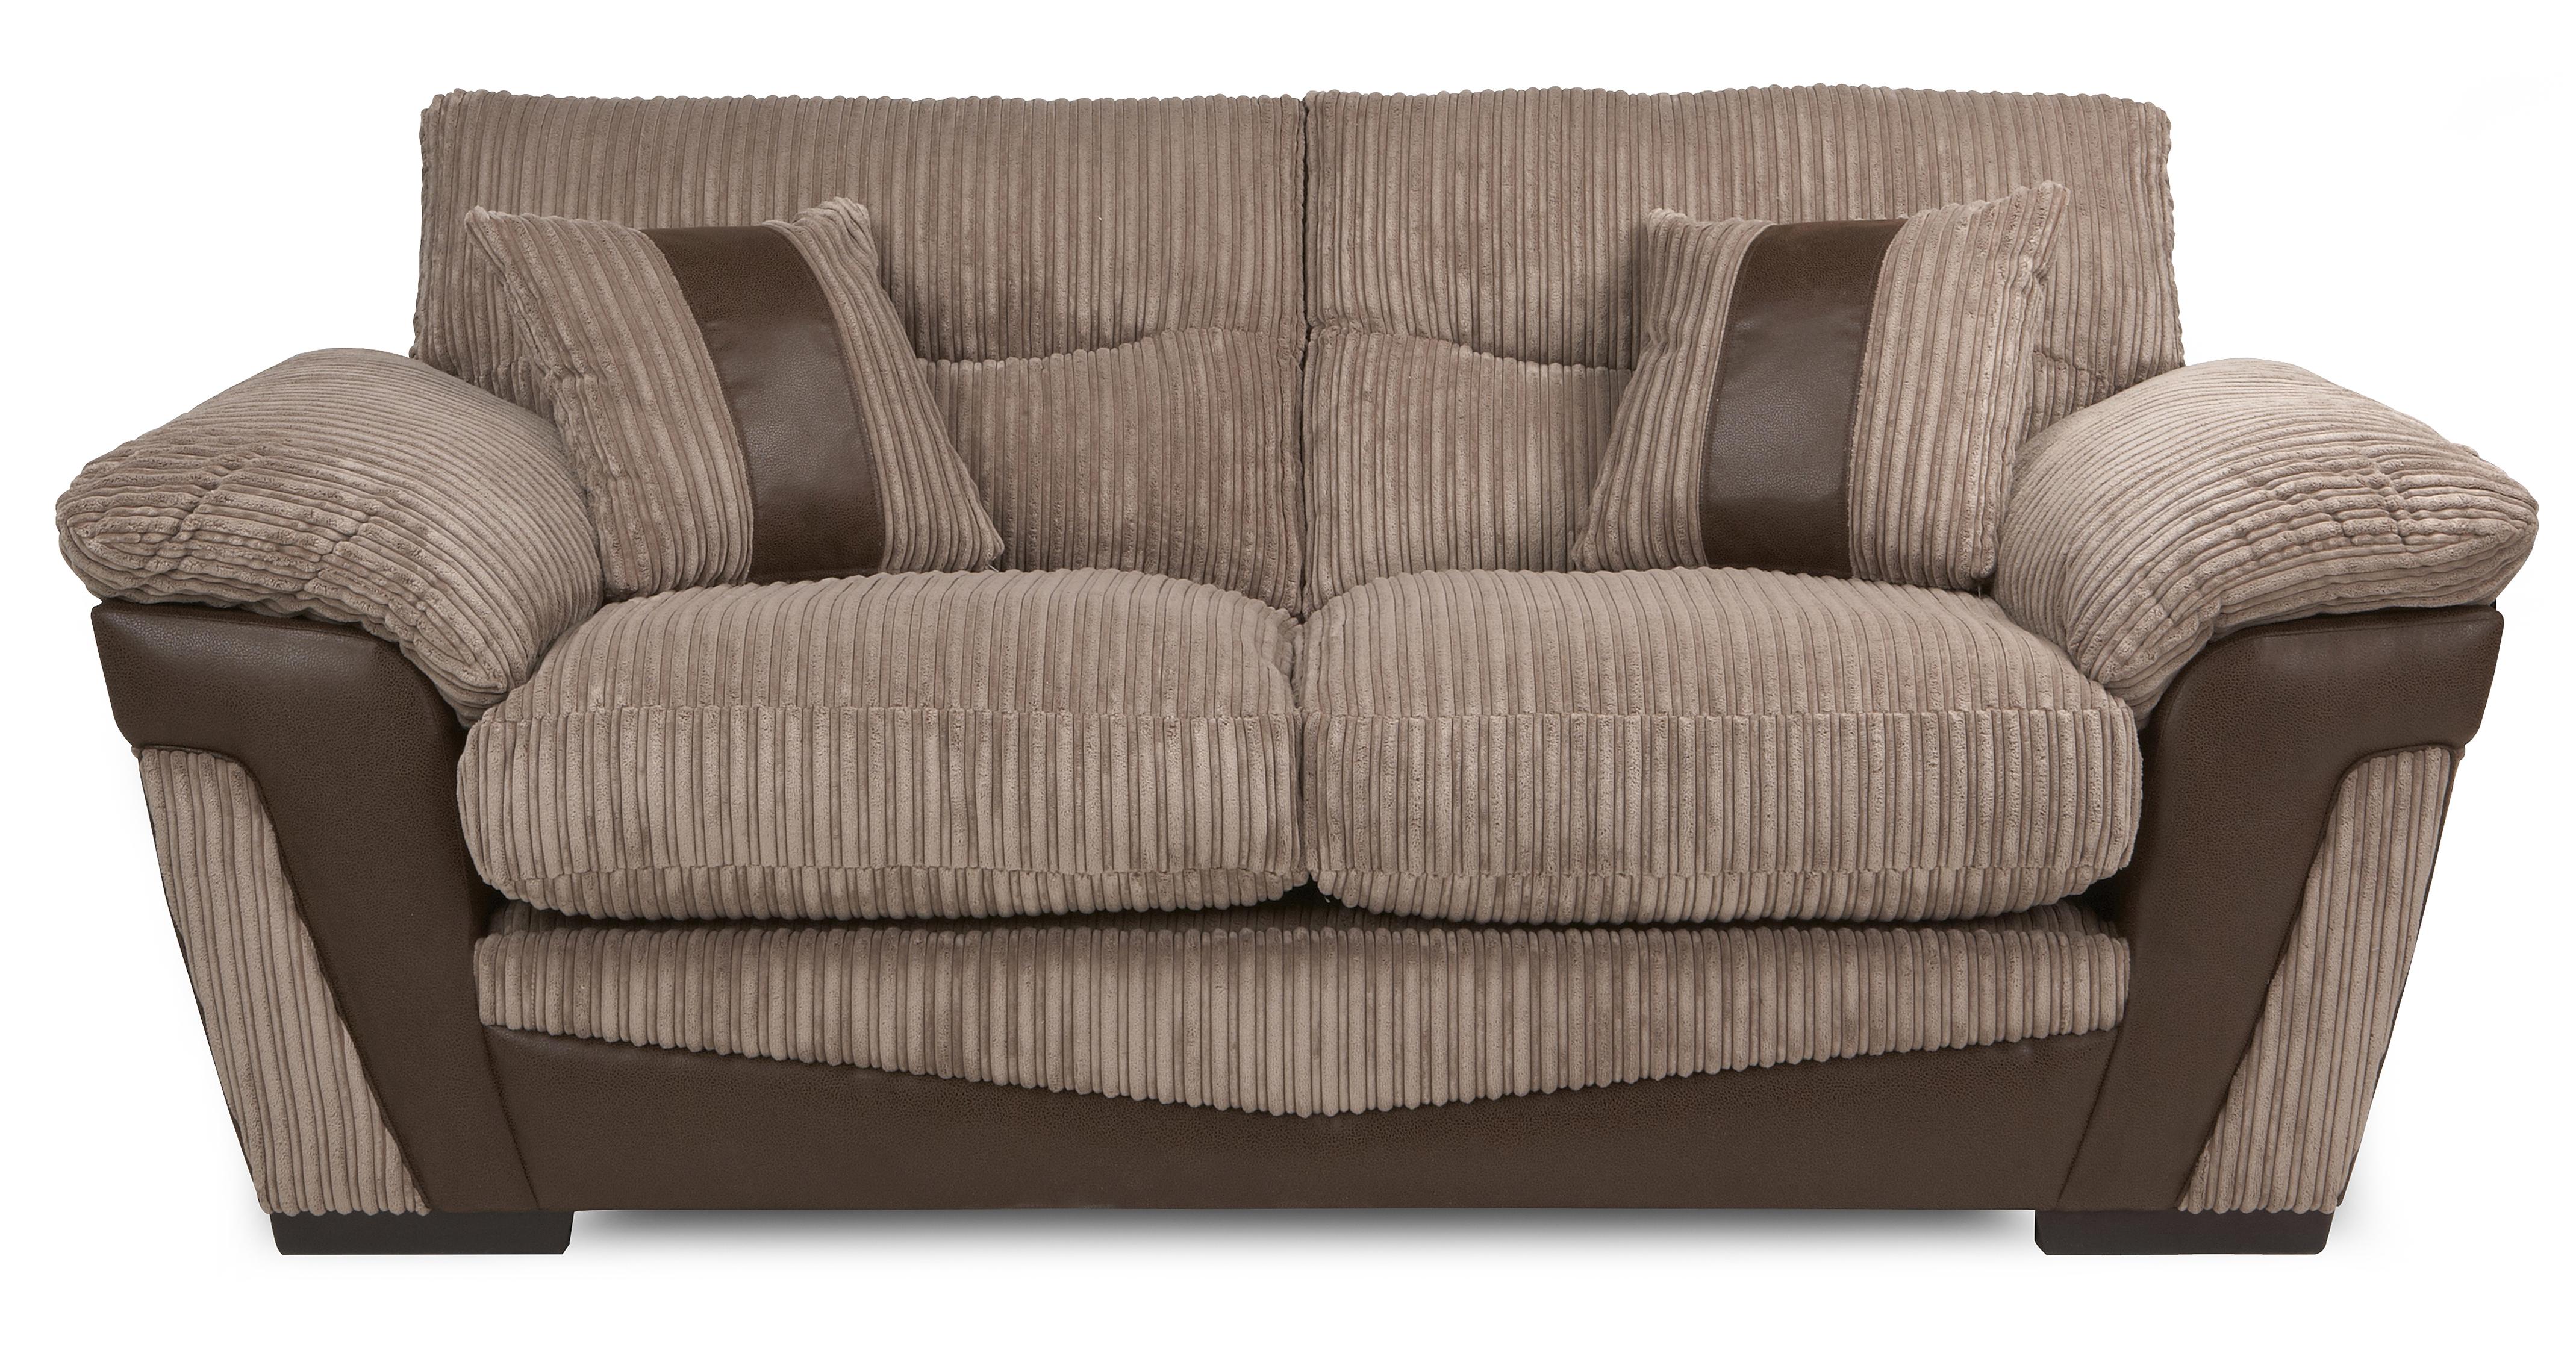 dfs sofa beds finance